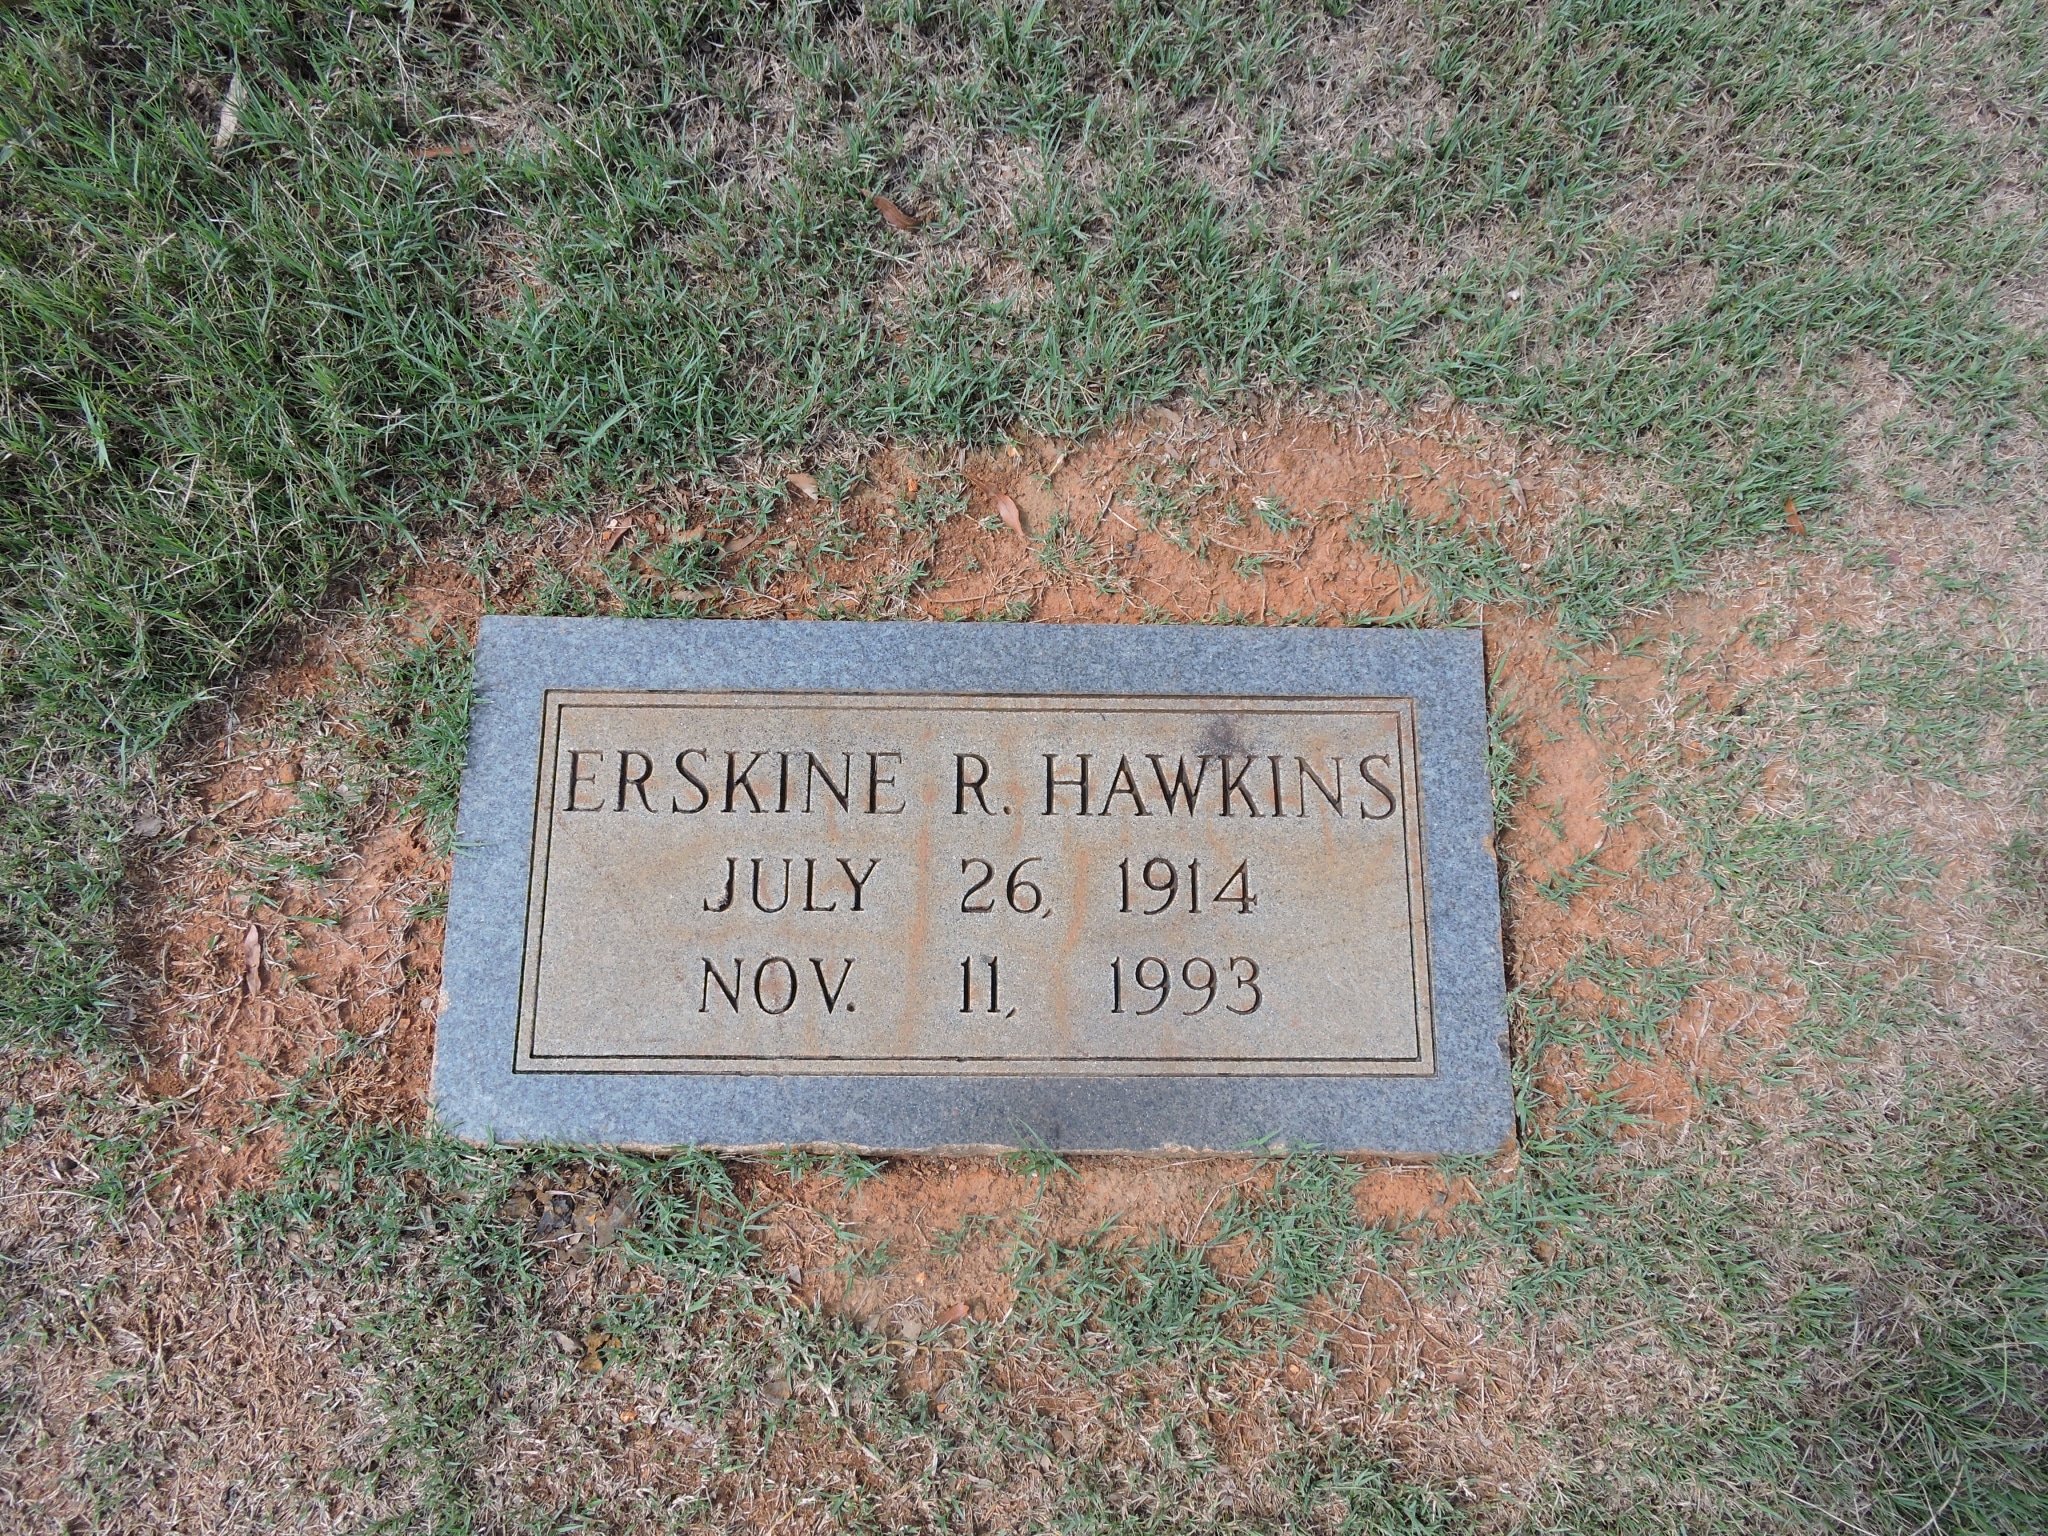 Erskine Hawkins Notable figures buried in Oak Hill and Elmwood Cemeteries